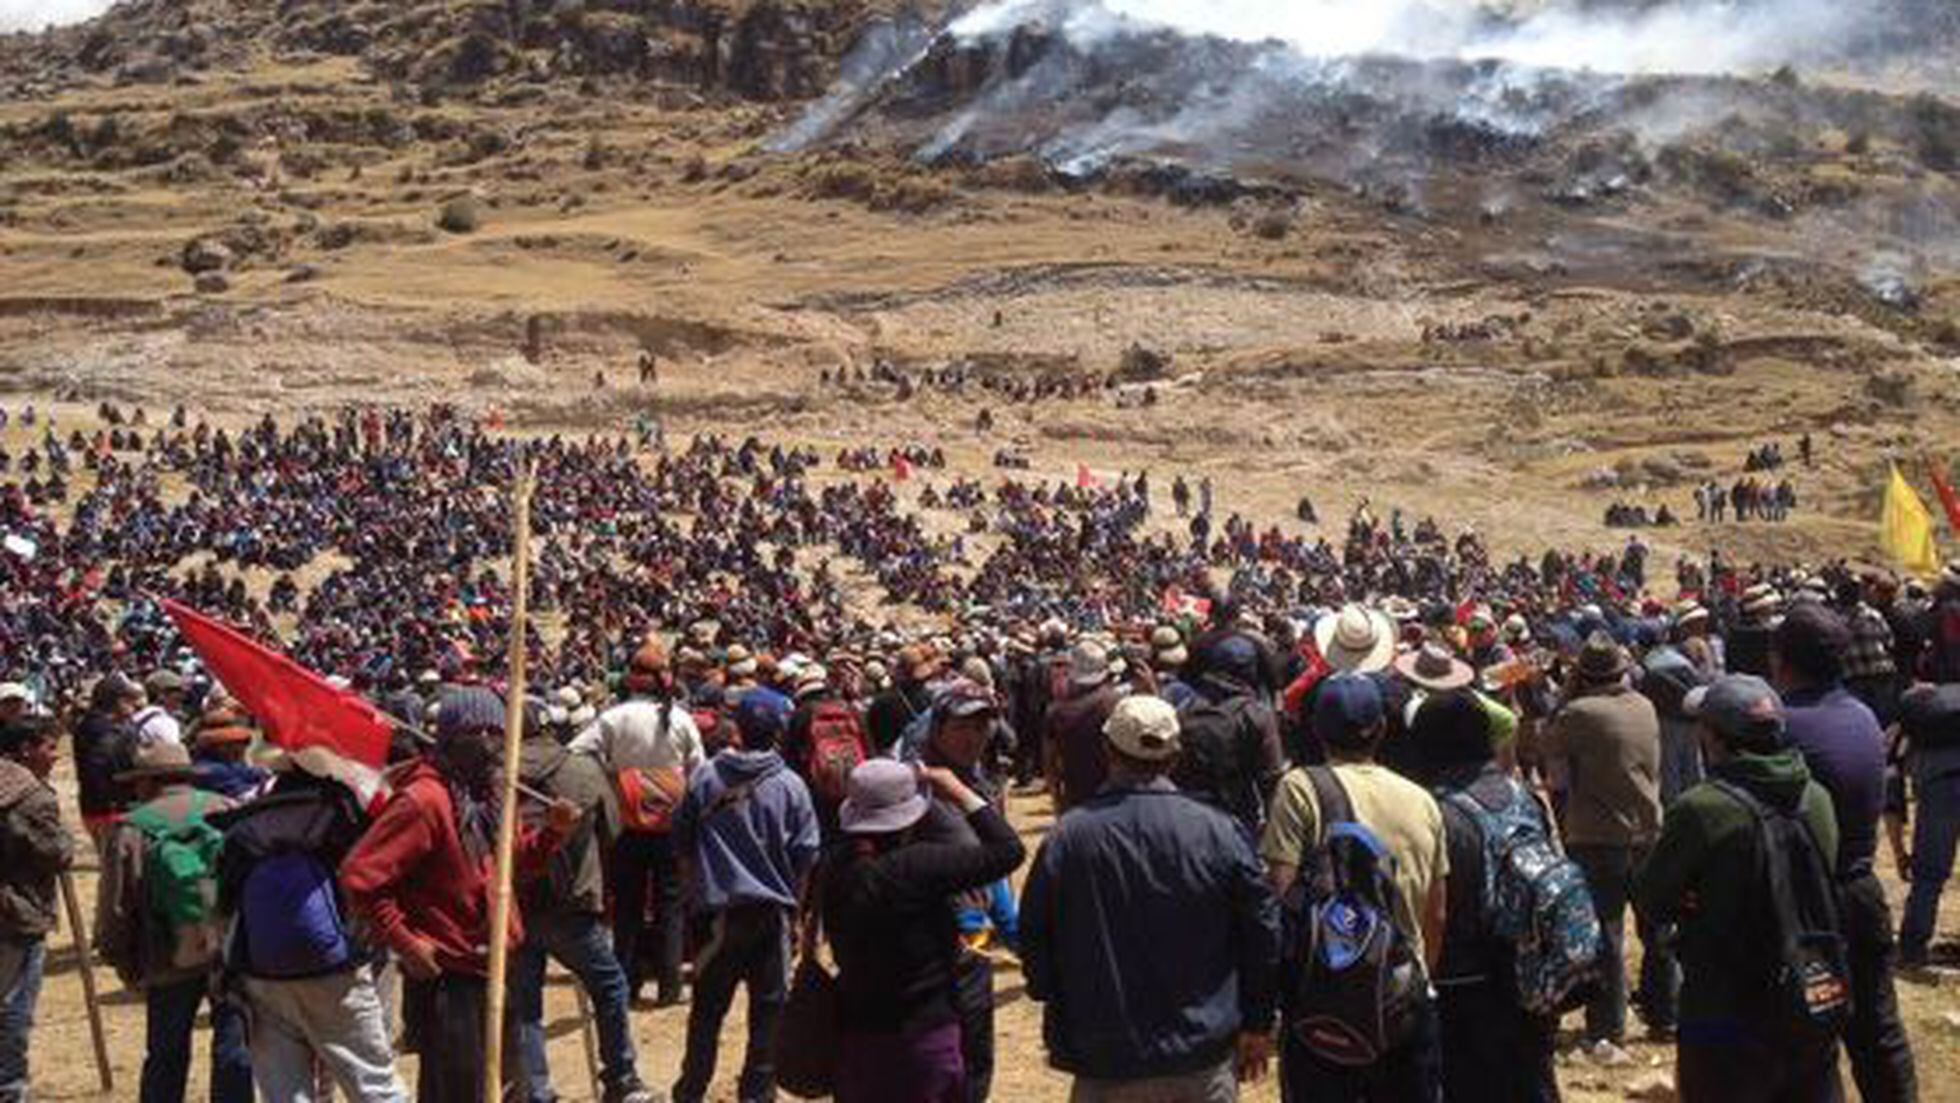 Apurímac: Perú decreta el estado de emergencia por un conflicto minero |  Internacional | EL PAÍS